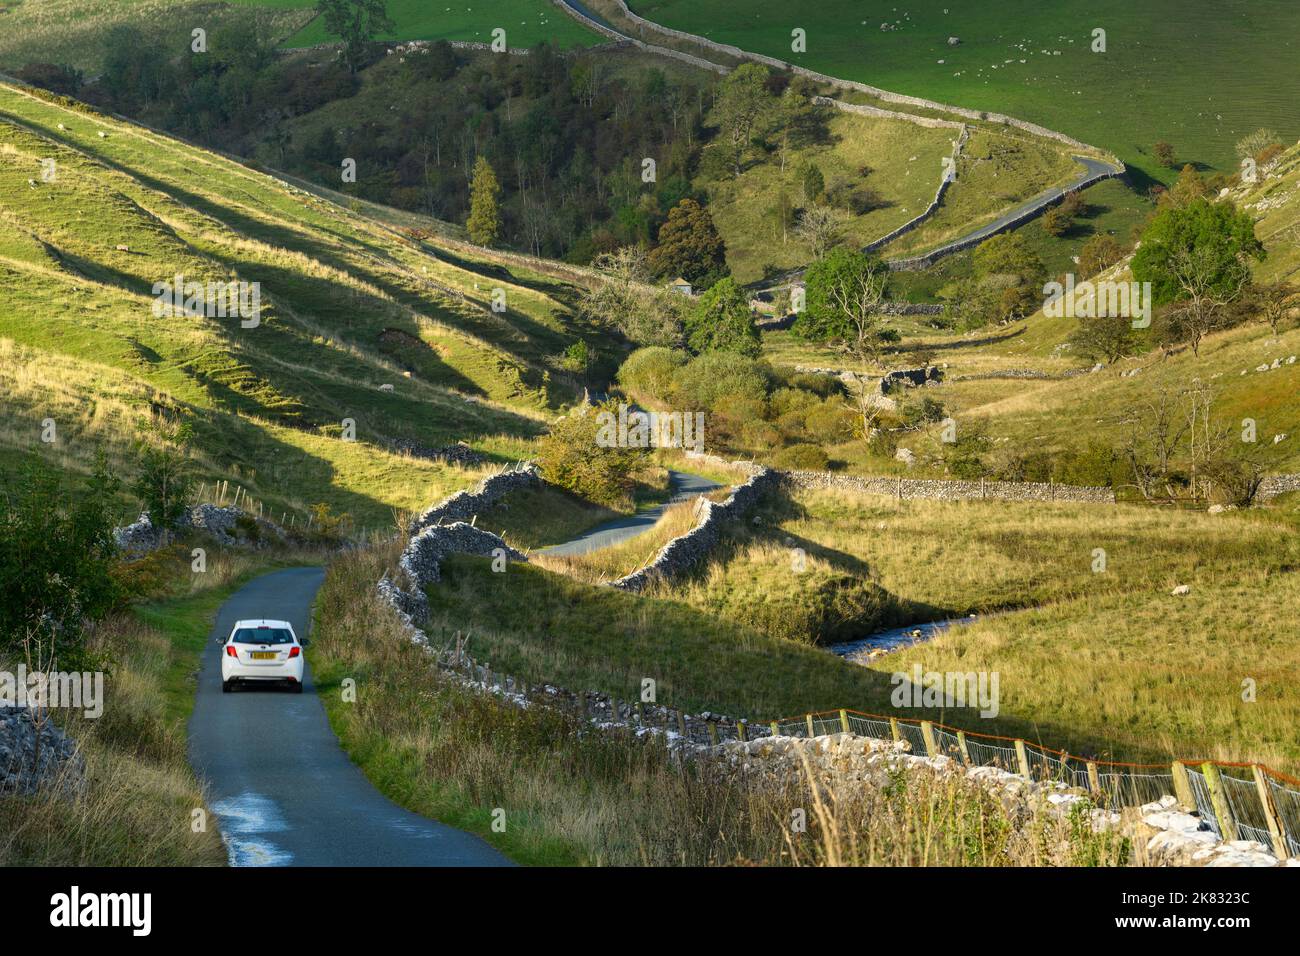 1 voiture sur une route de campagne sinueuse et calme (campagne vallonnée avec vue panoramique, montée abrupte, ruisseau) - près de Kettlewell, Yorkshire Dales, Angleterre. Banque D'Images